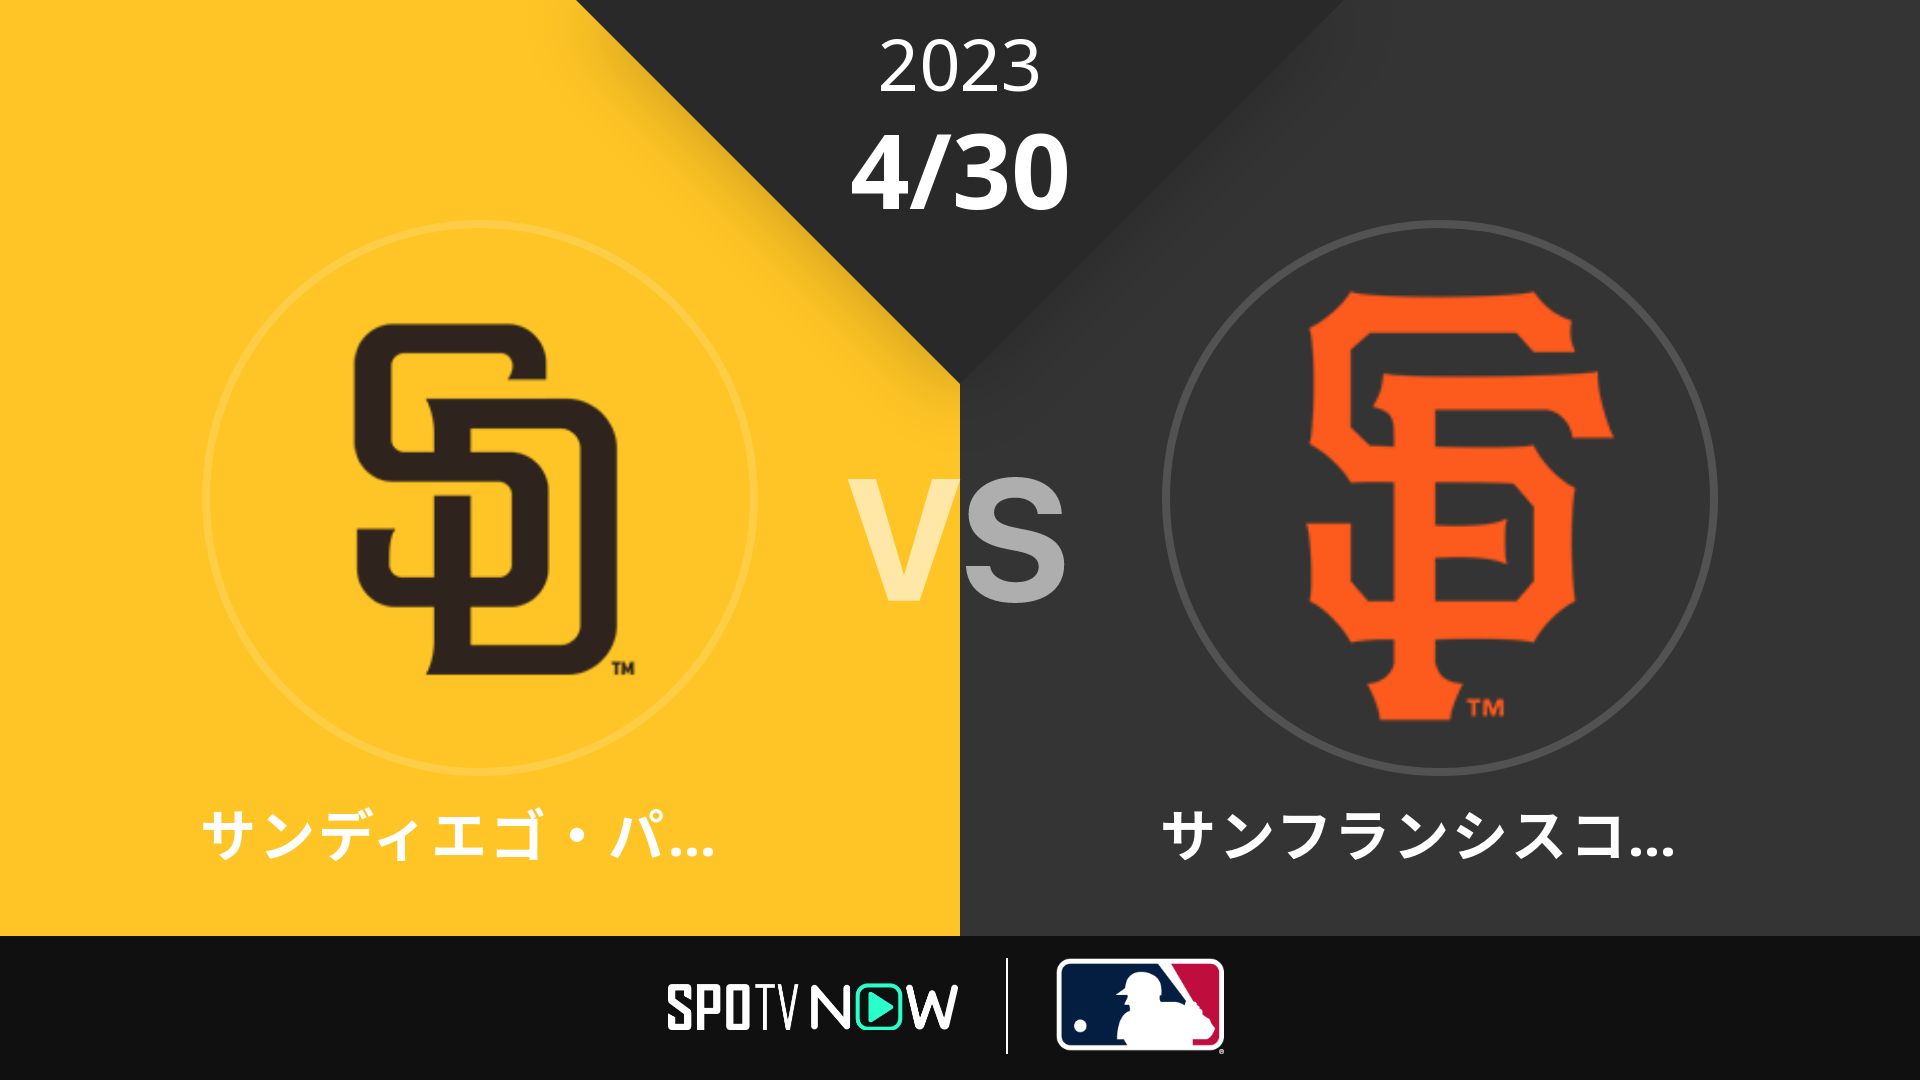 2023/4/30 パドレス vs ジャイアンツ [MLB]